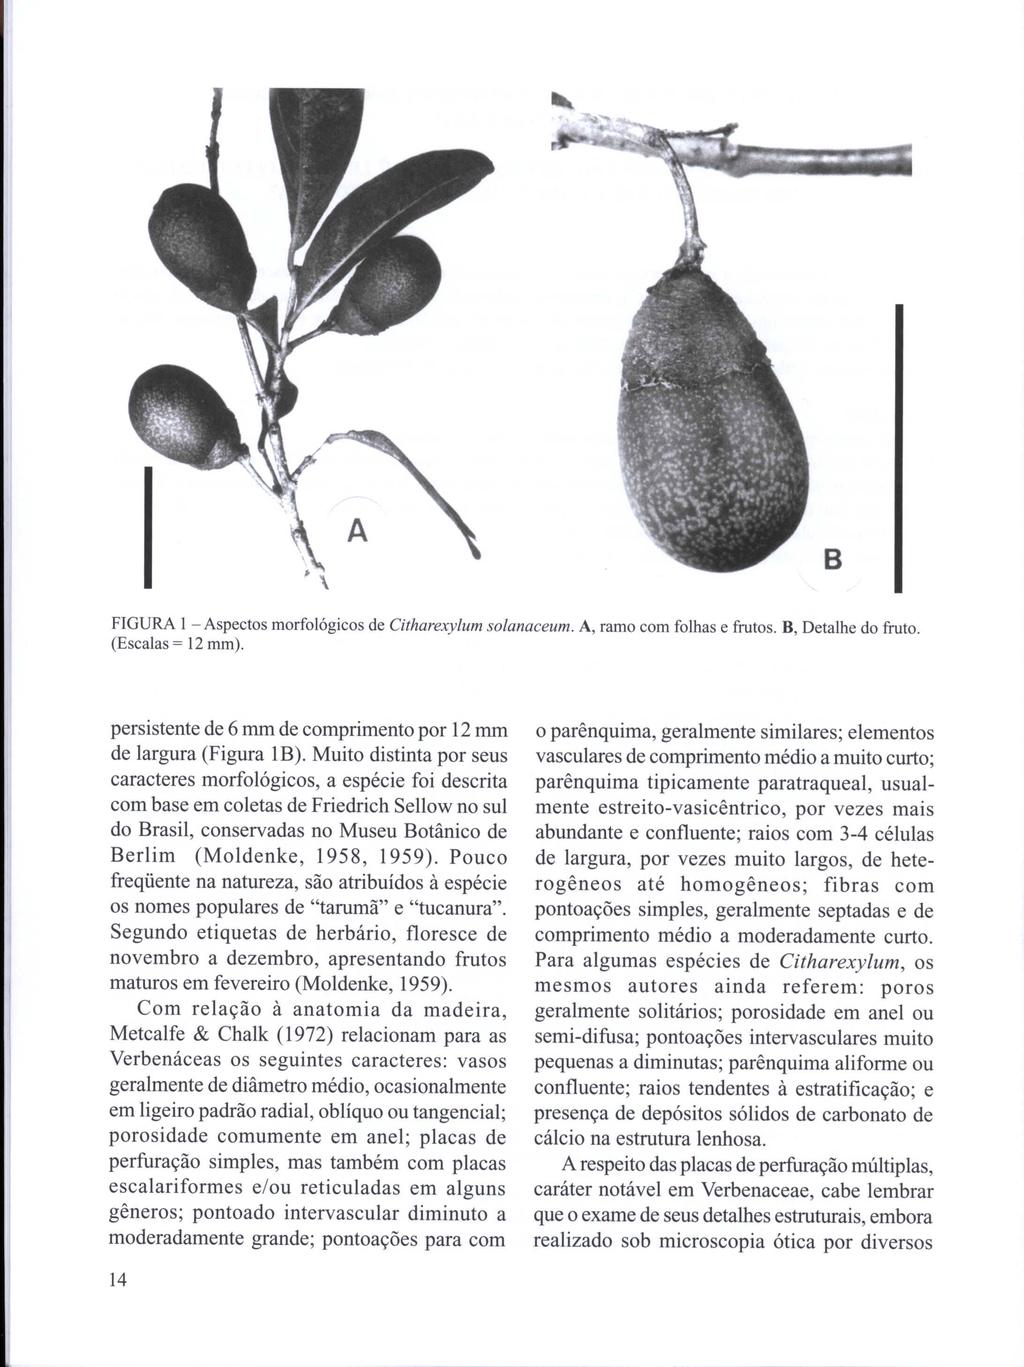 B FIGURA 1 - Aspectos morfológicos de Citharexylum solanaceum. A, ramo com folhas e frutos. B, Detalhe do fruto. (Escalas = 12 mm). persistente de 6 mm de comprimento por 12 mm de largura (Figura lb).